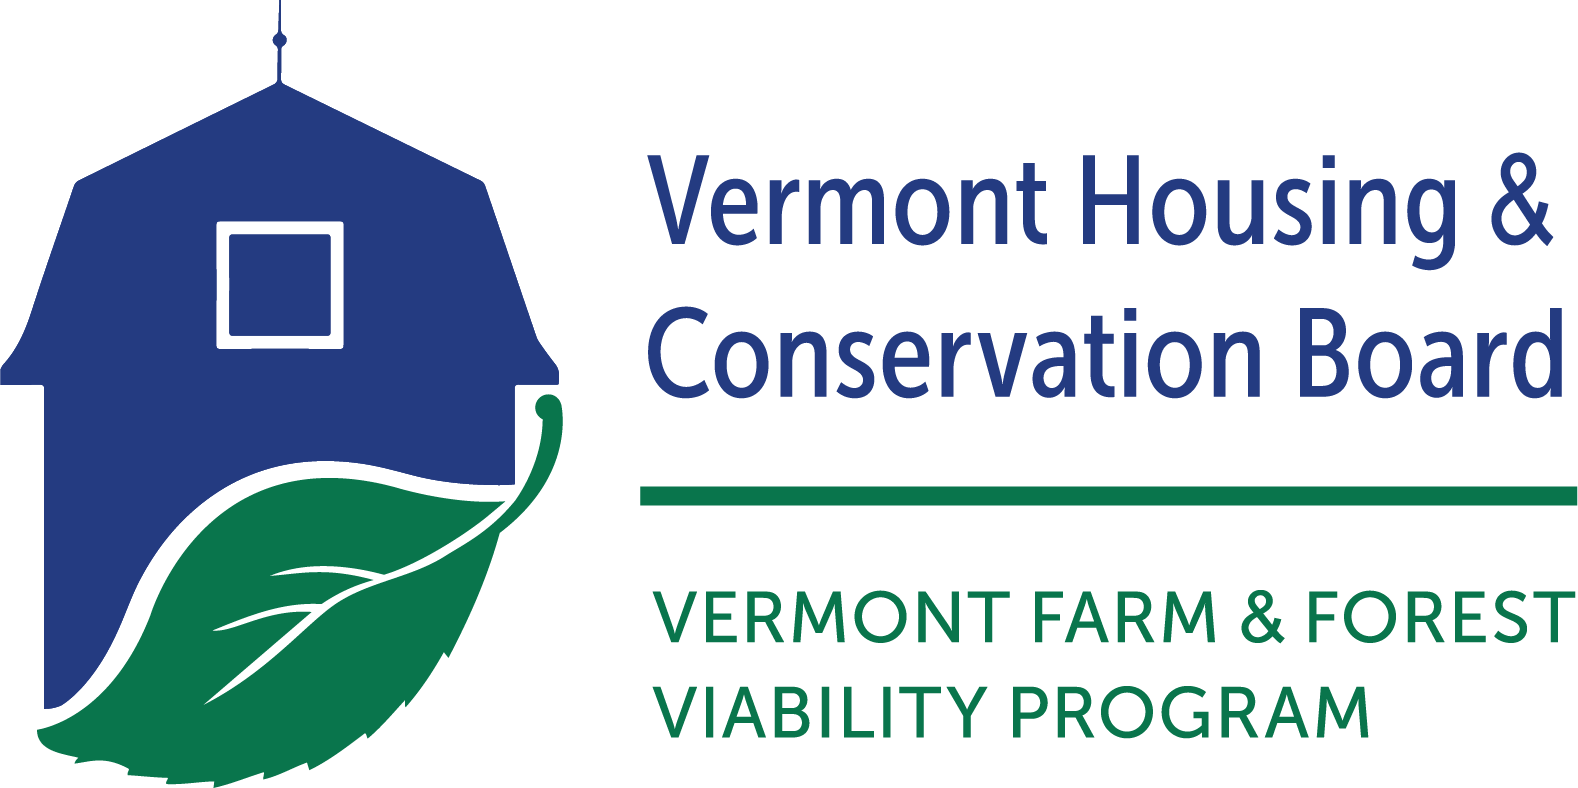 VHCB Farm & Forest Viability